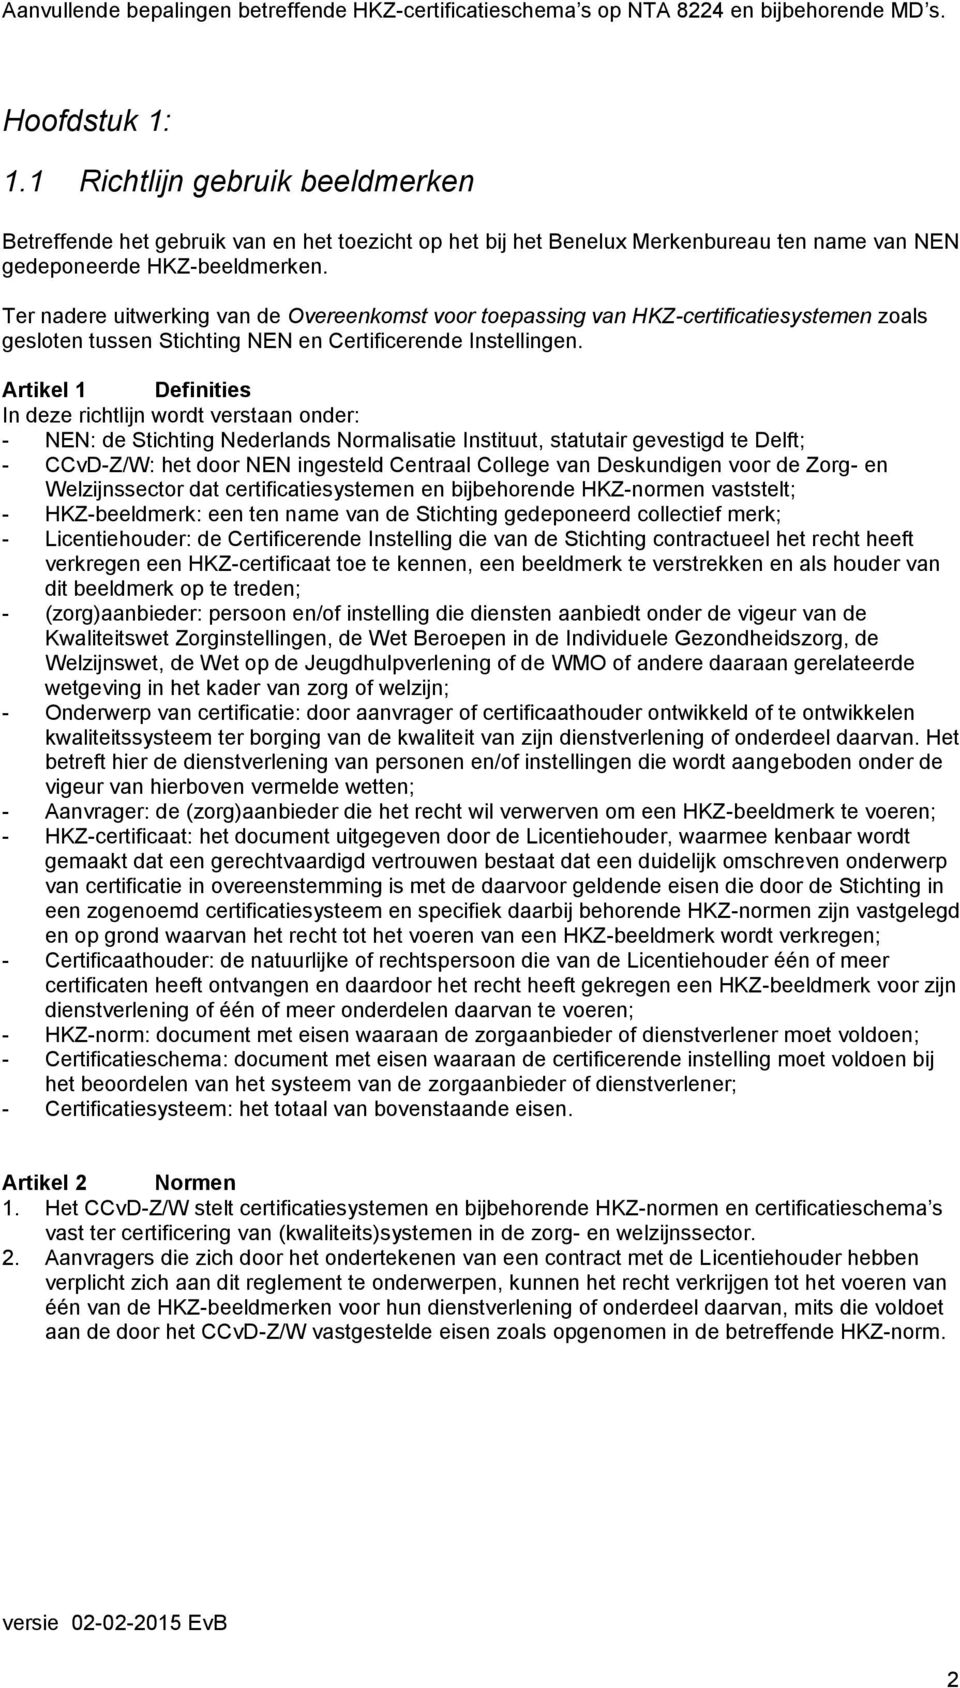 Artikel 1 Definities In deze richtlijn wordt verstaan onder: - NEN: de Stichting Nederlands Normalisatie Instituut, statutair gevestigd te Delft; - CCvD-Z/W: het door NEN ingesteld Centraal College